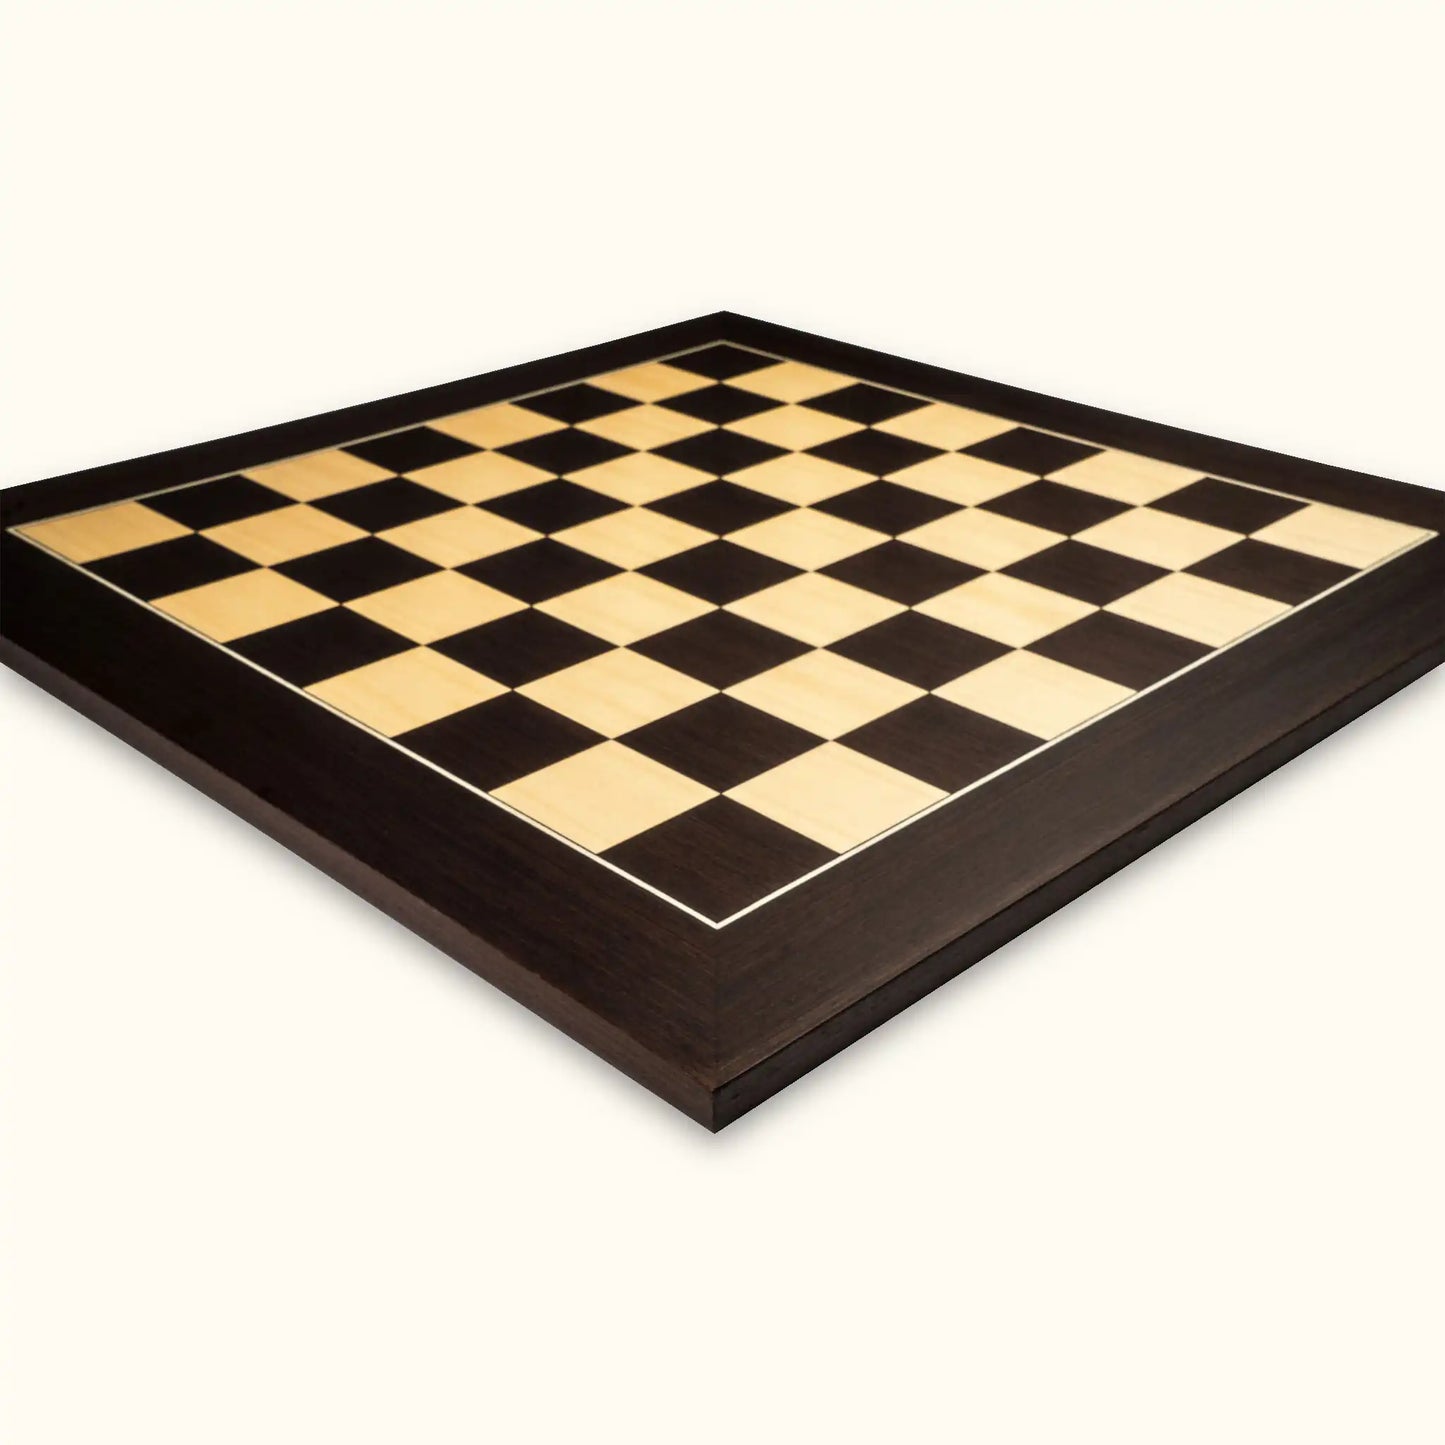 Chessboard wenge deluxe 55 mm diagonal view